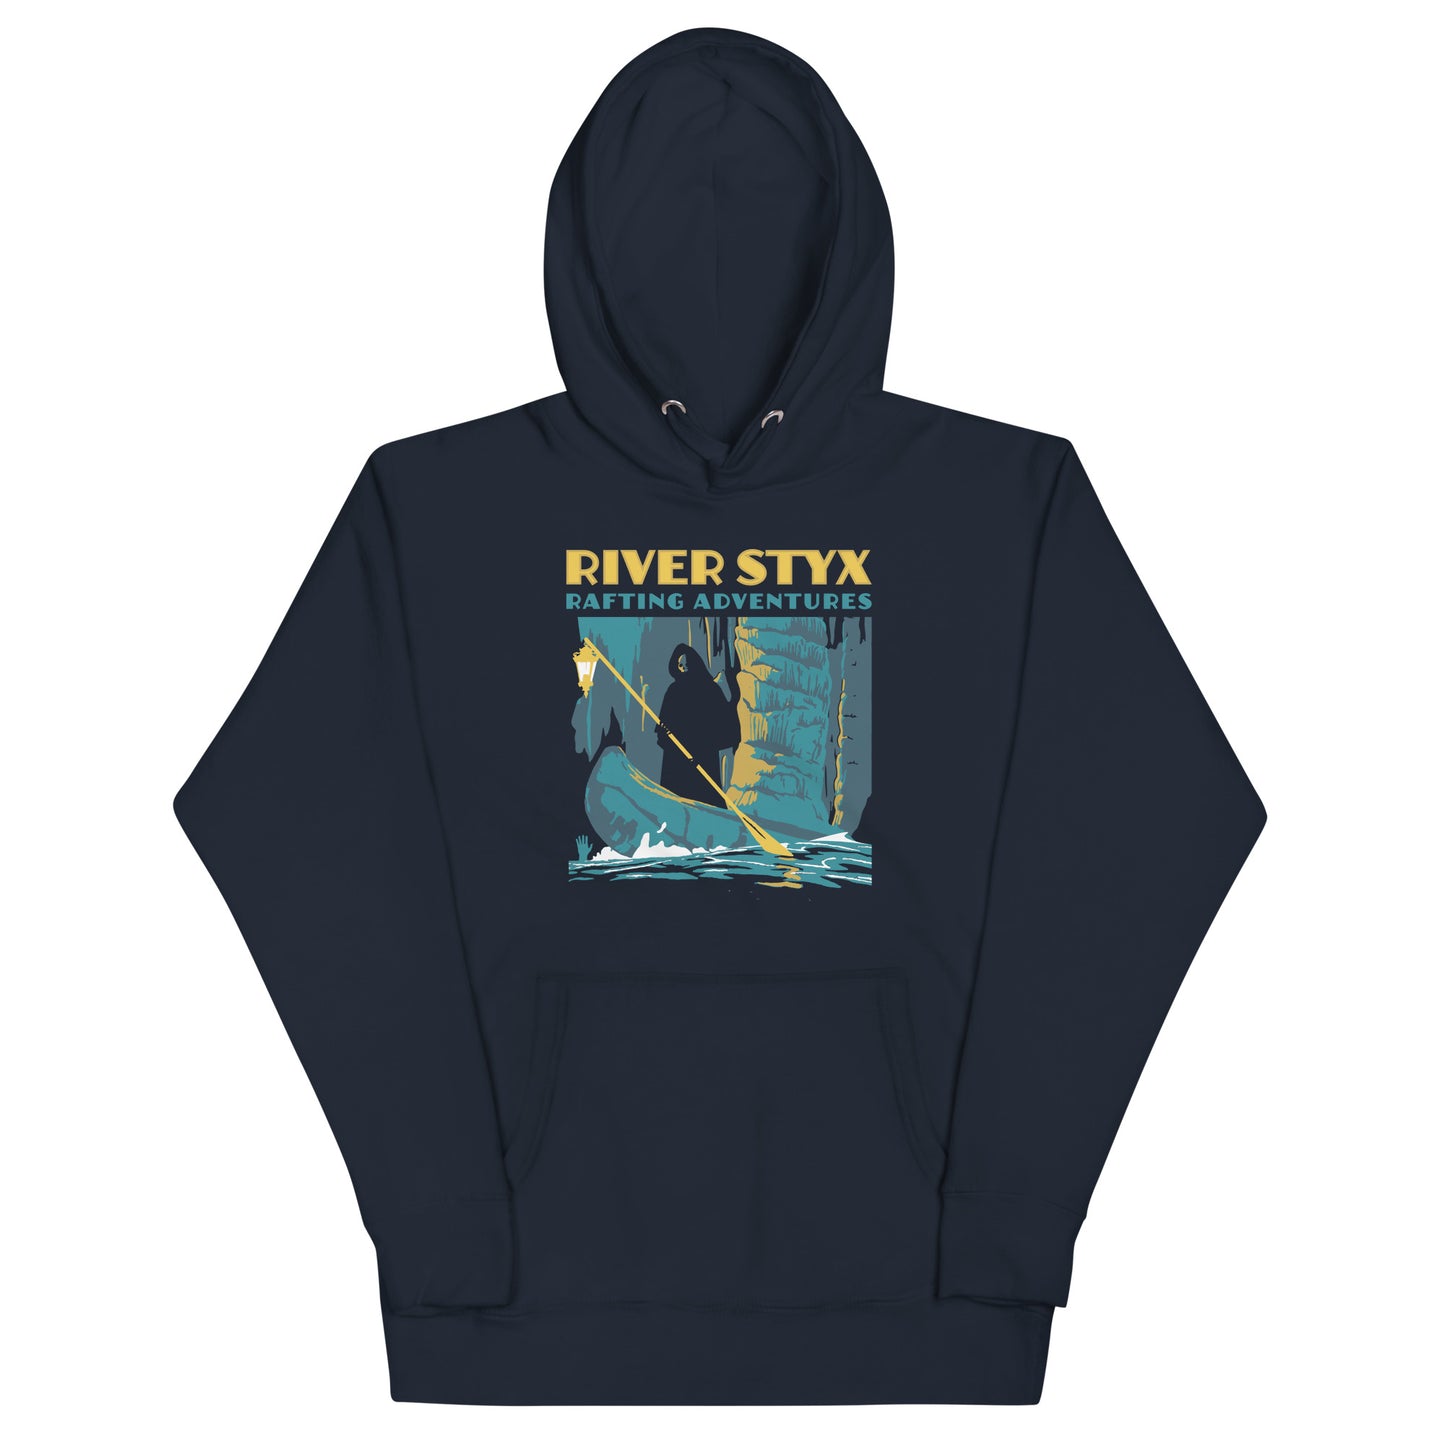 River Styx Rafting Adventures Unisex Hoodie